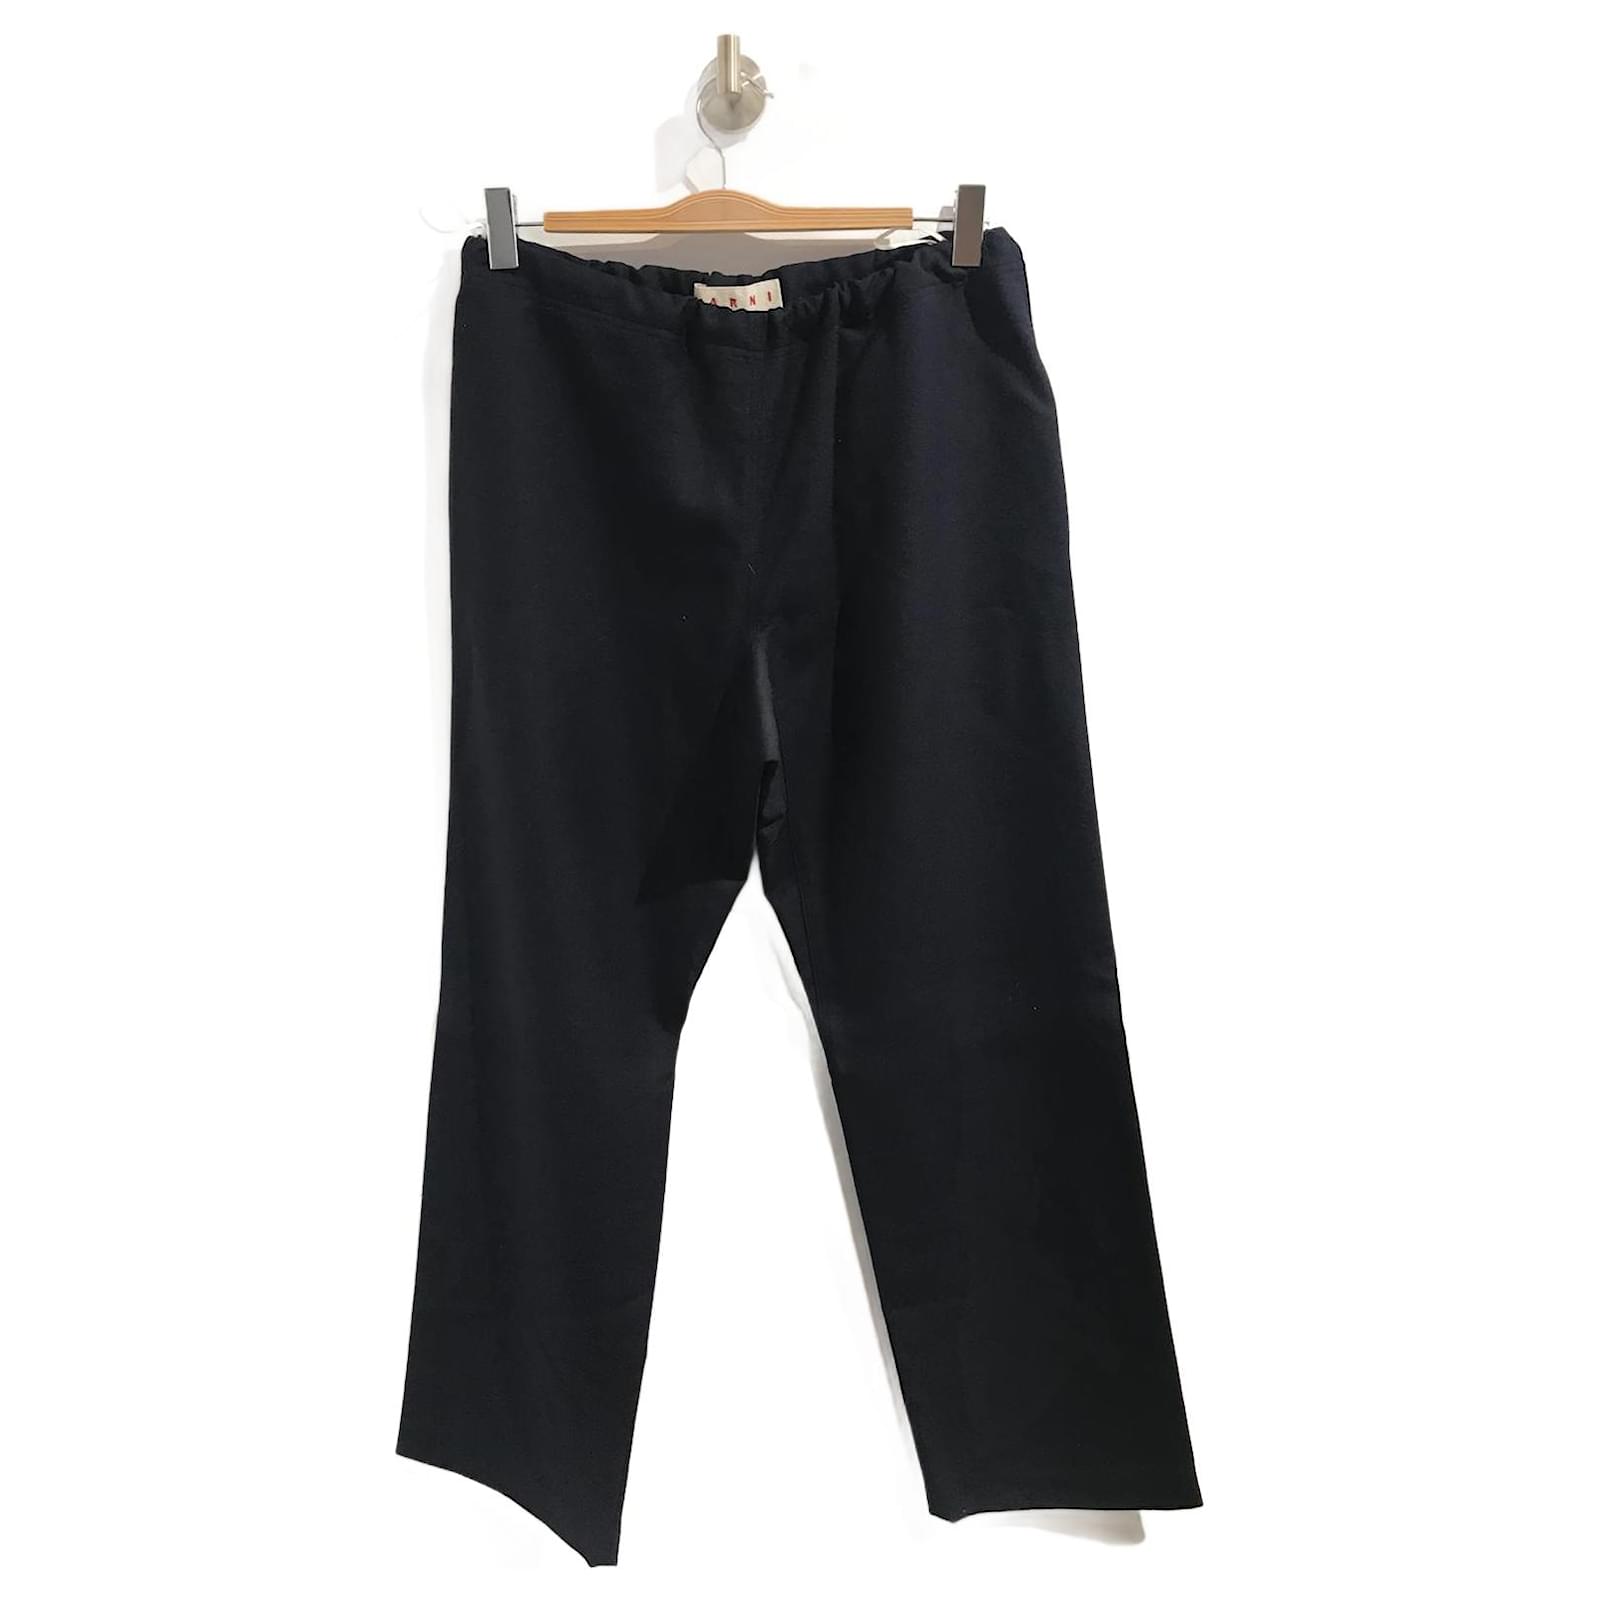 https://cdn1.jolicloset.com/imgr/full/2023/07/941095-1/blue-marni-trousers-tit-38-wool-pants-leggings.jpg